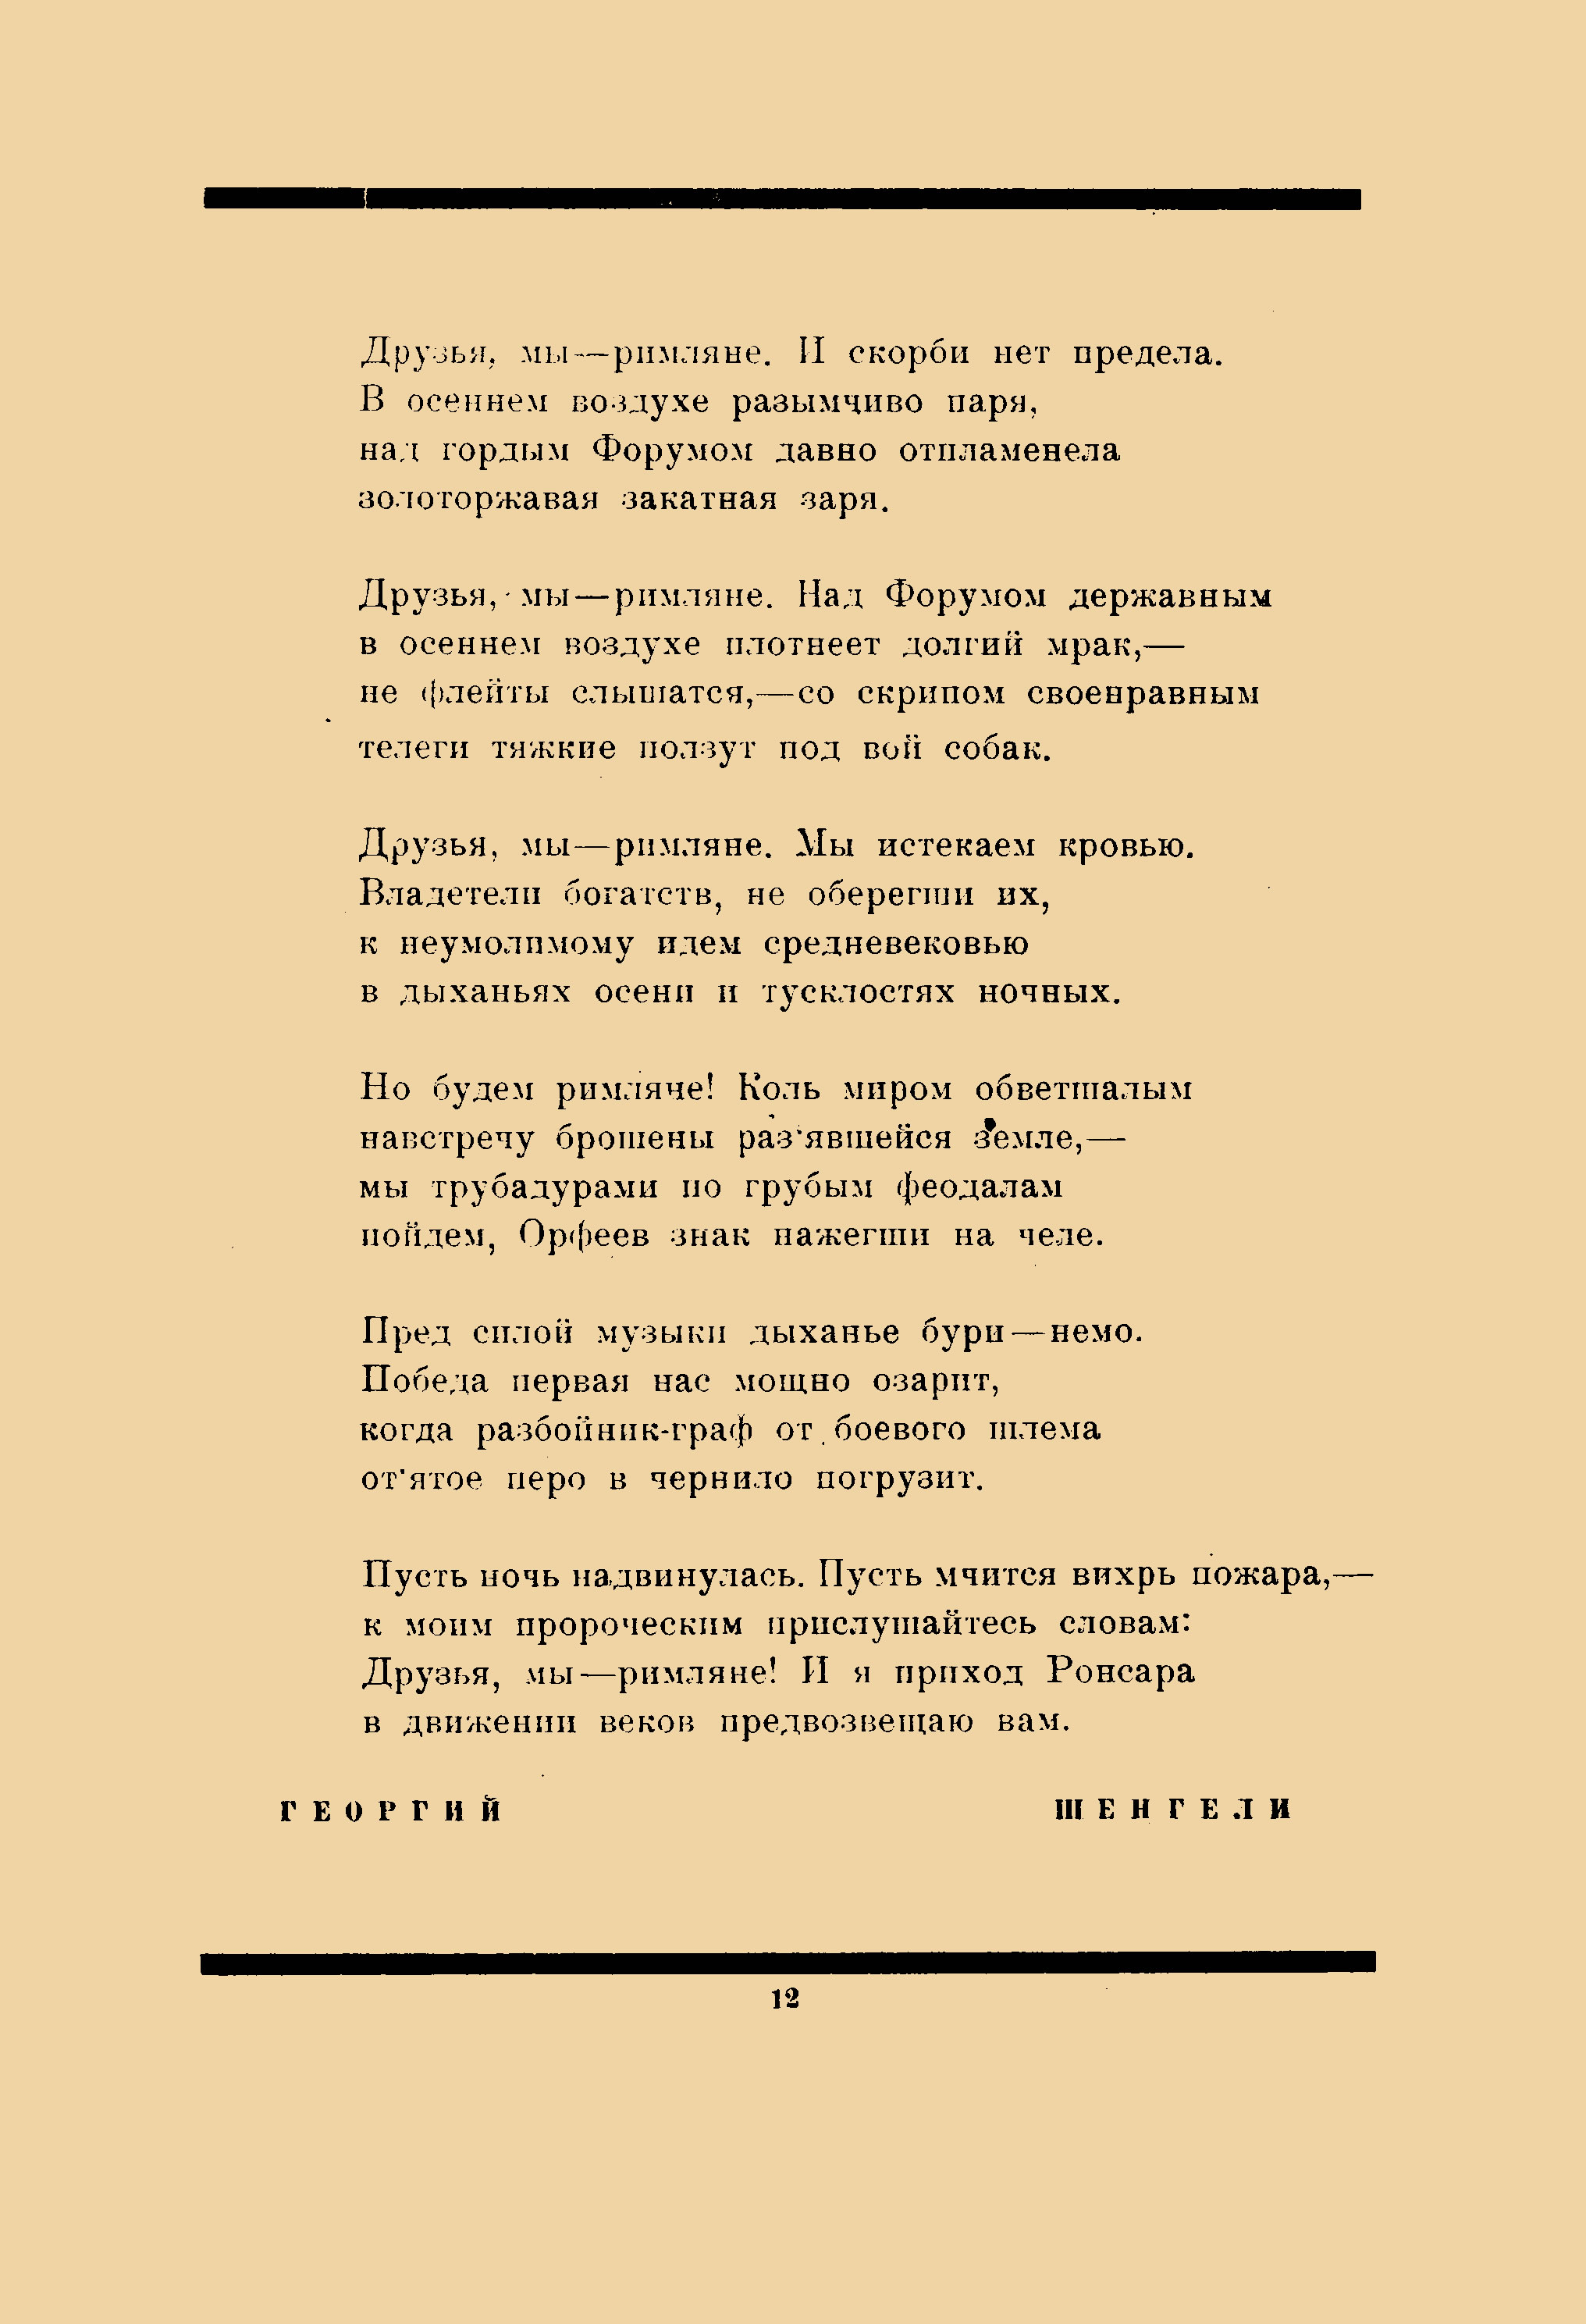 Пути творчества 1919 №4